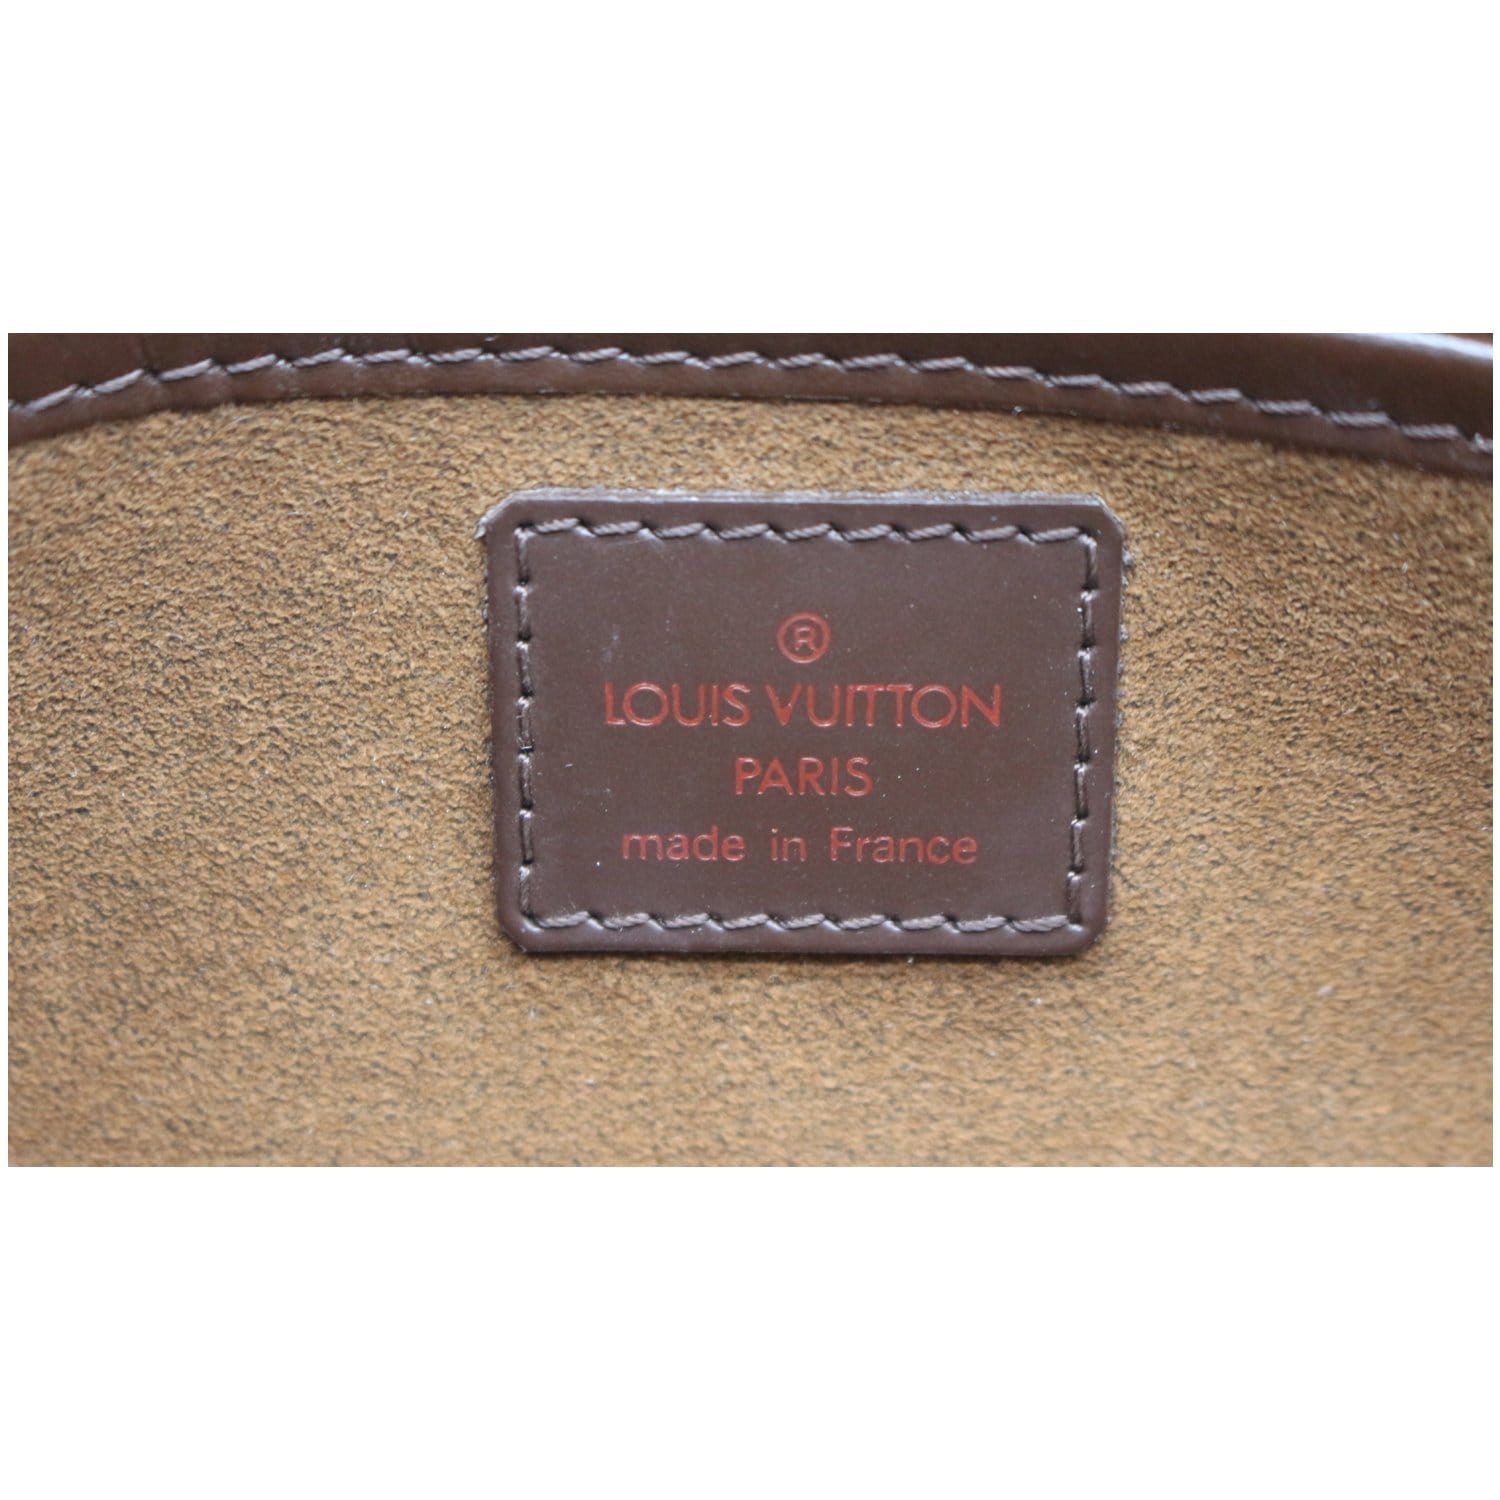 Auth LOUIS VUITTON Damier Brown Leather Clutch Bag Purse Saint Louis #8878